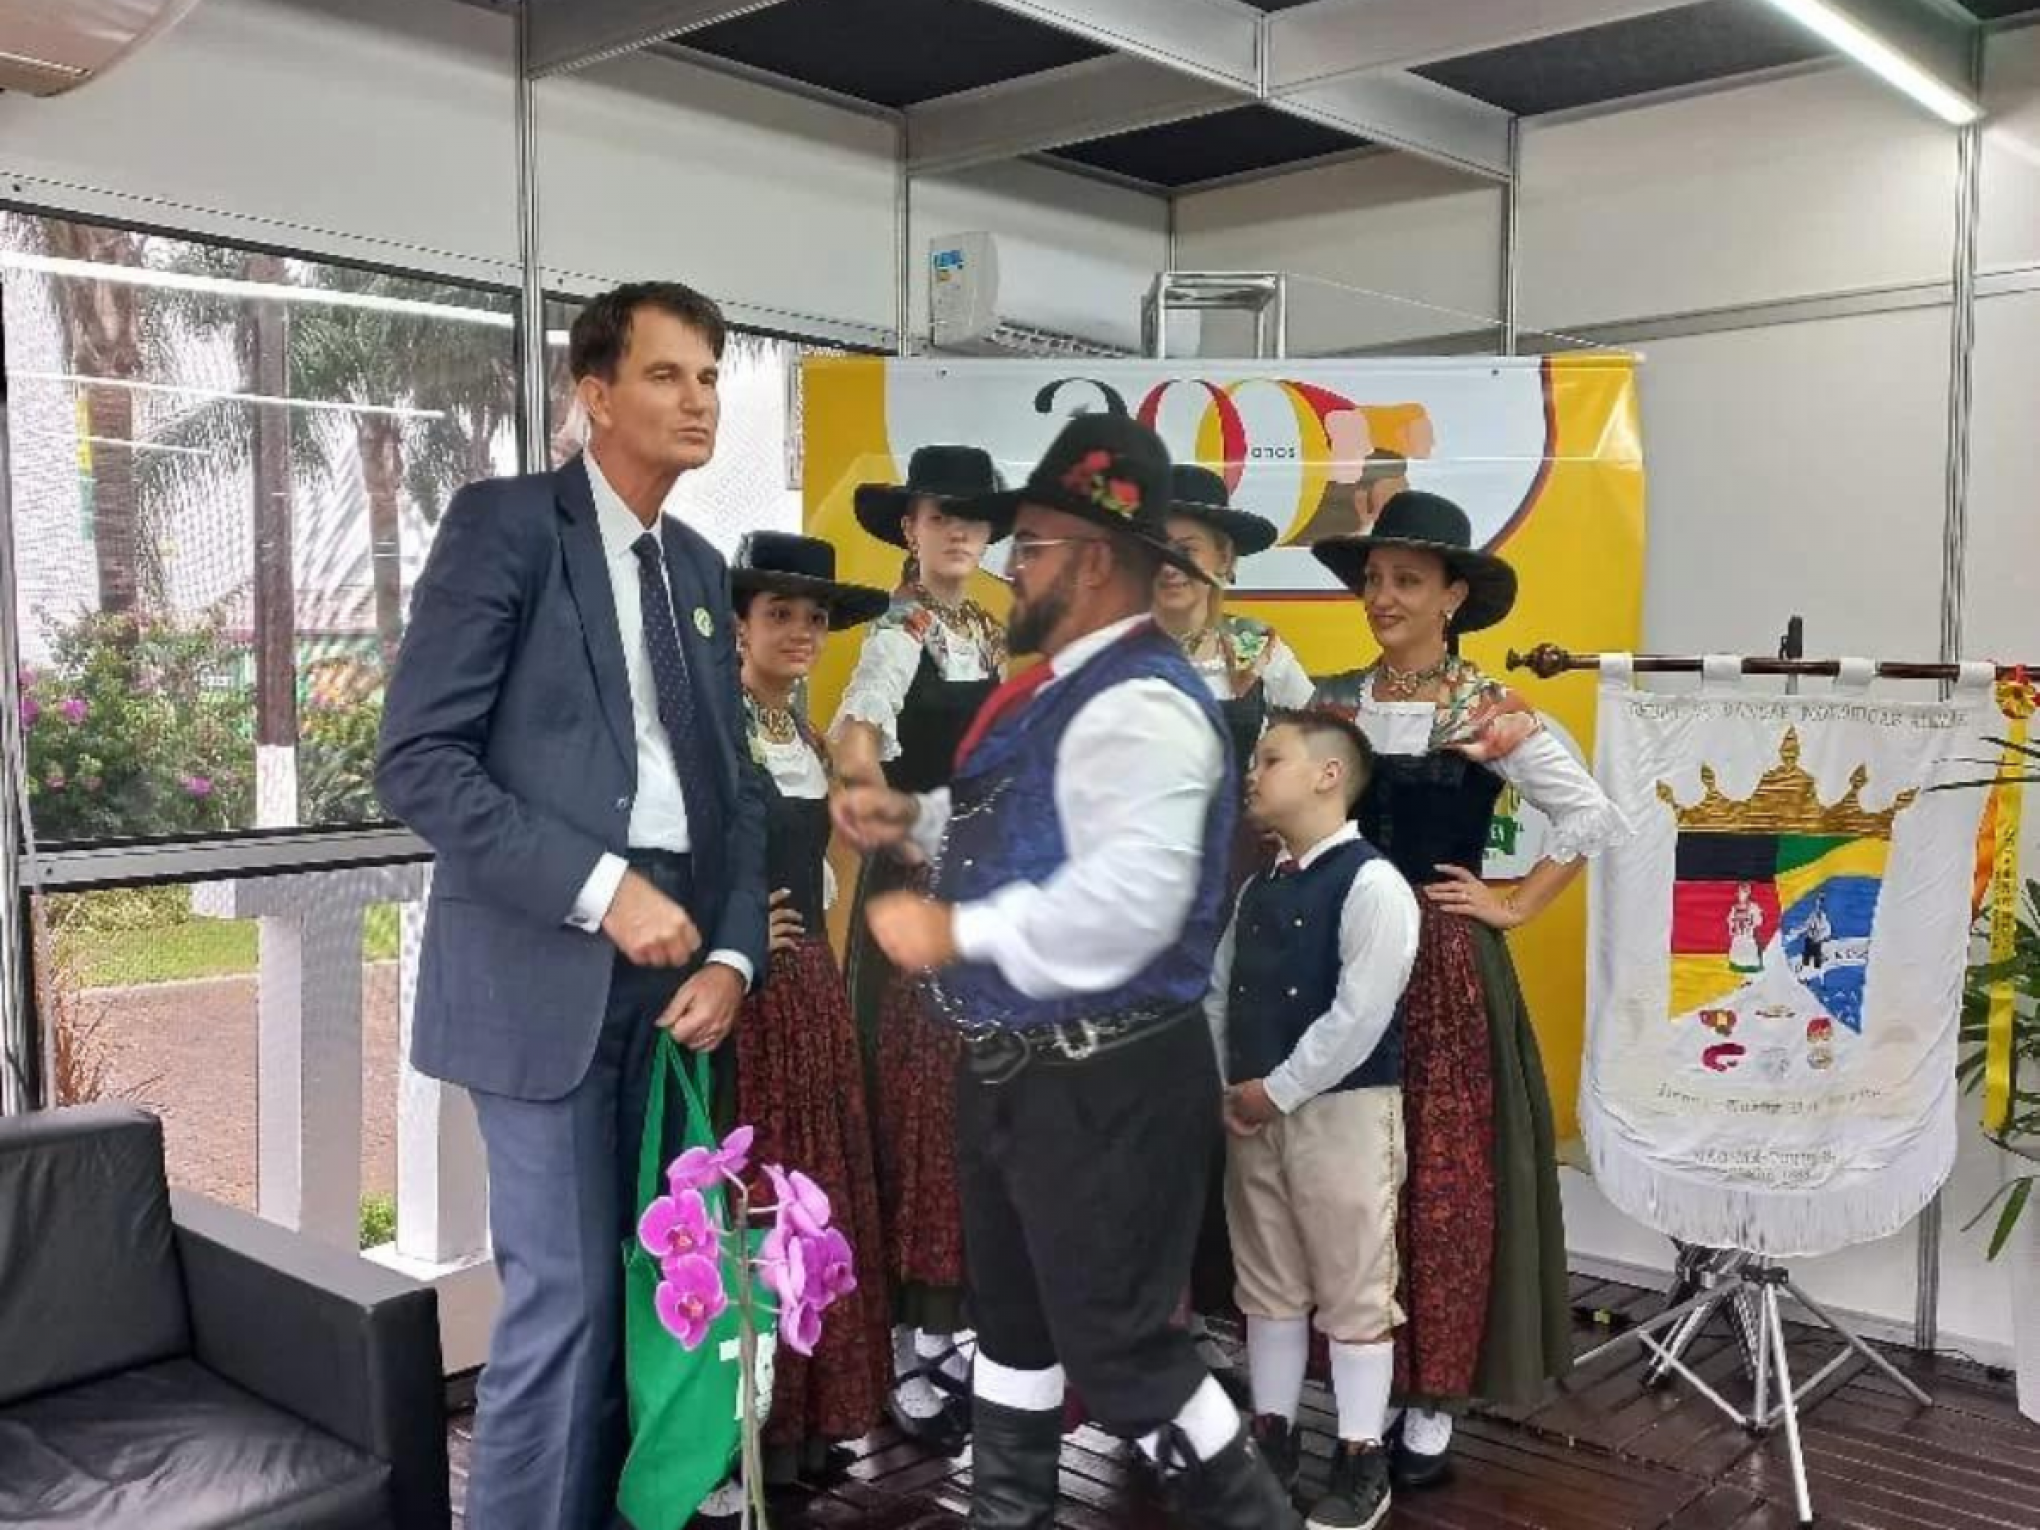 EXPODIRETO: Bicentenário da Imigração Alemã é destaque na feira